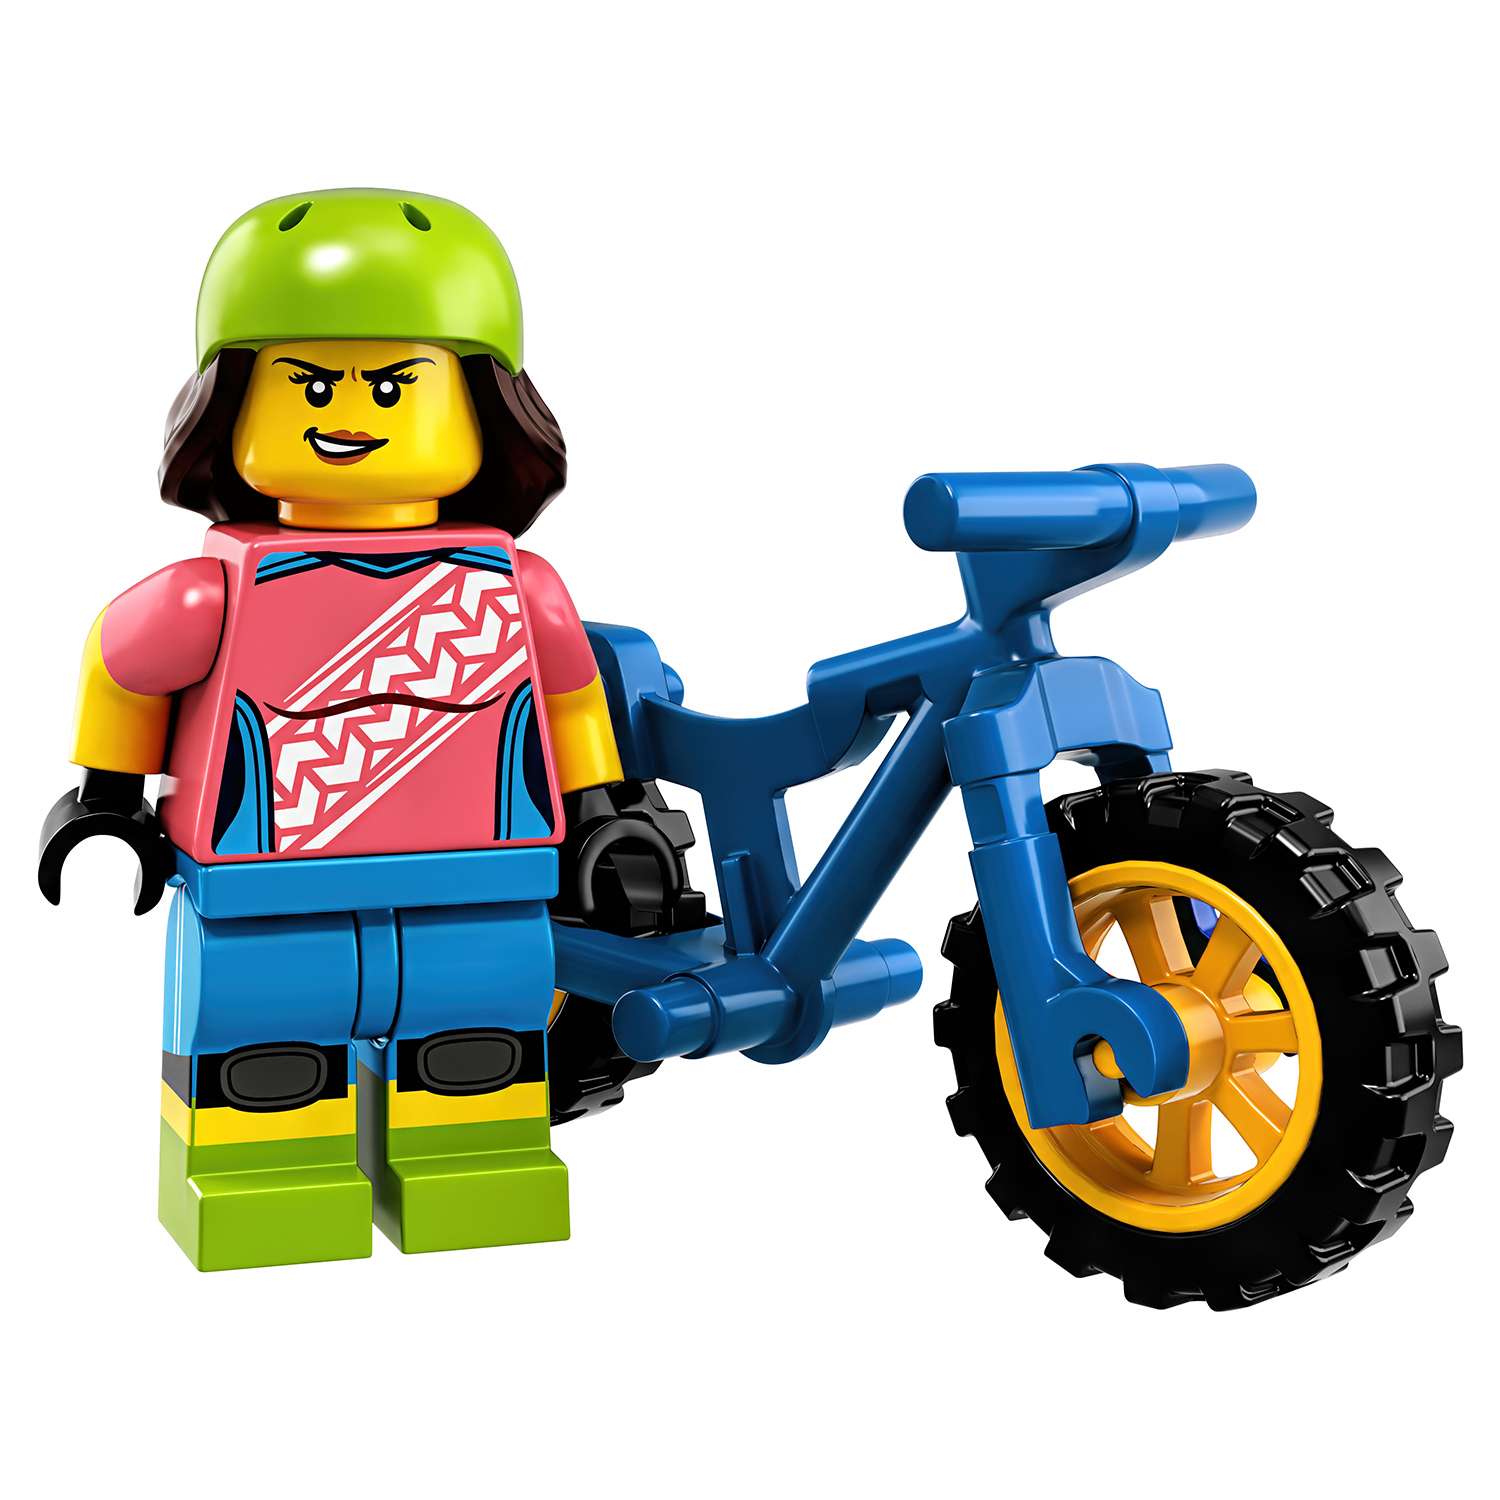 Конструктор LEGO Minifigures Серия 19 в непрозрачной упаковке (Сюрприз) 71025 - фото 5